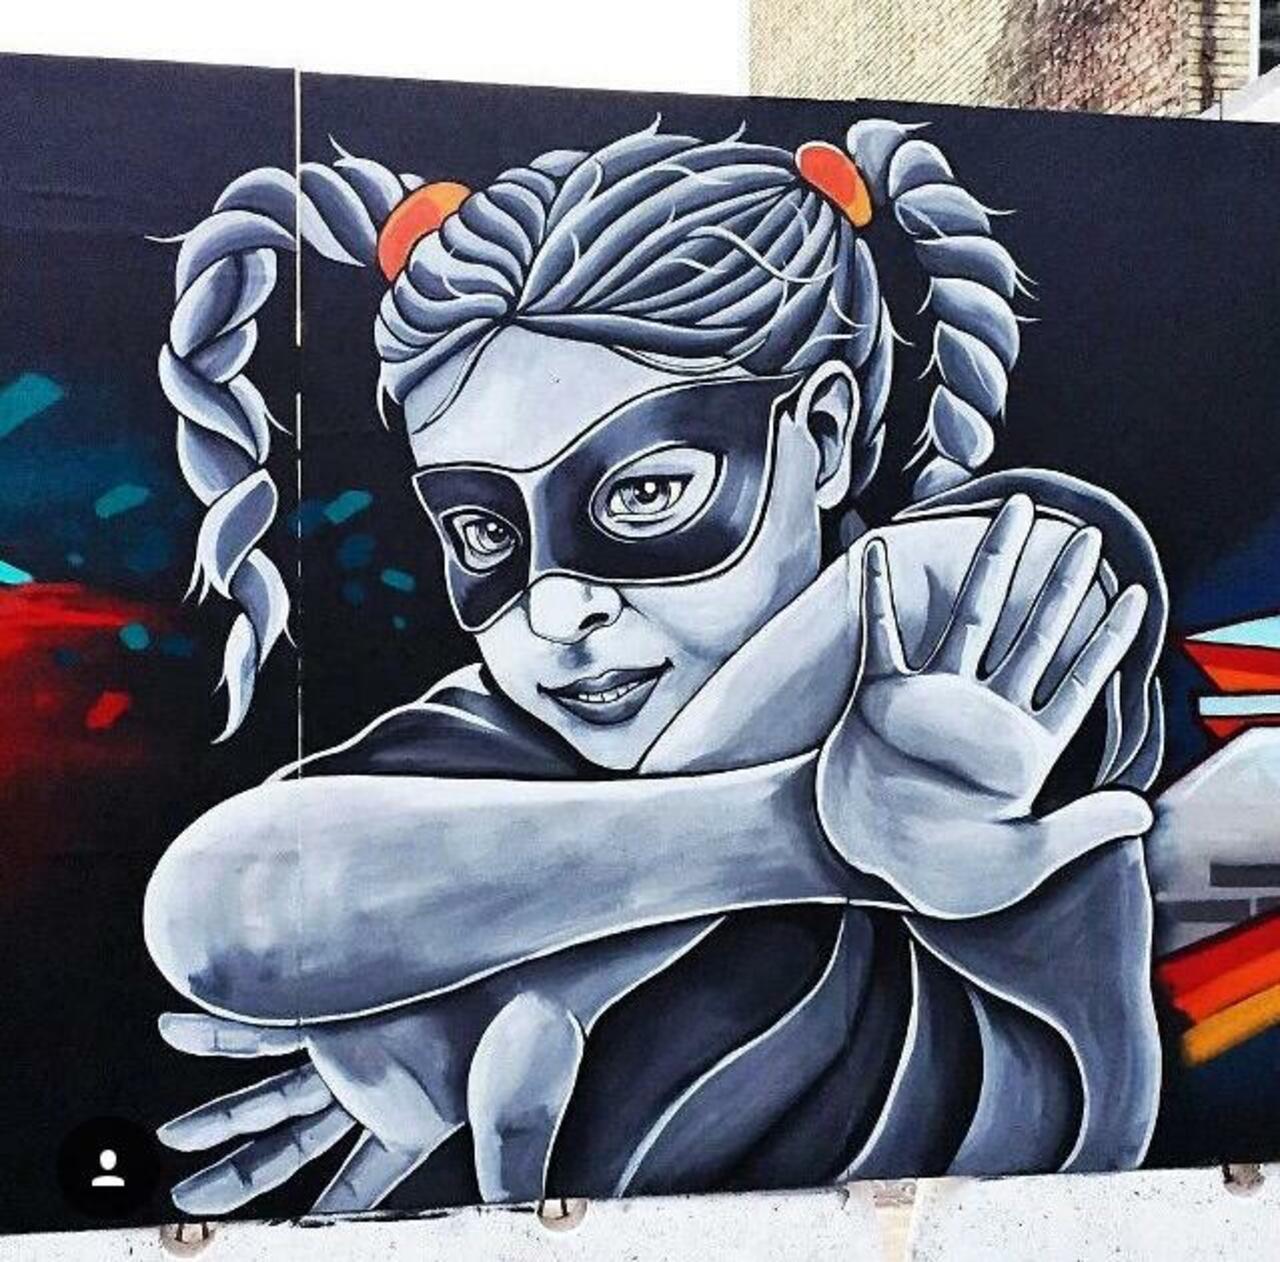 Street Art by Stinehvid 

#art #graffiti #mural #streetart http://t.co/d6ZKsma5Z9 googlestreetart chinatoniq https://goo.gl/7kifqw